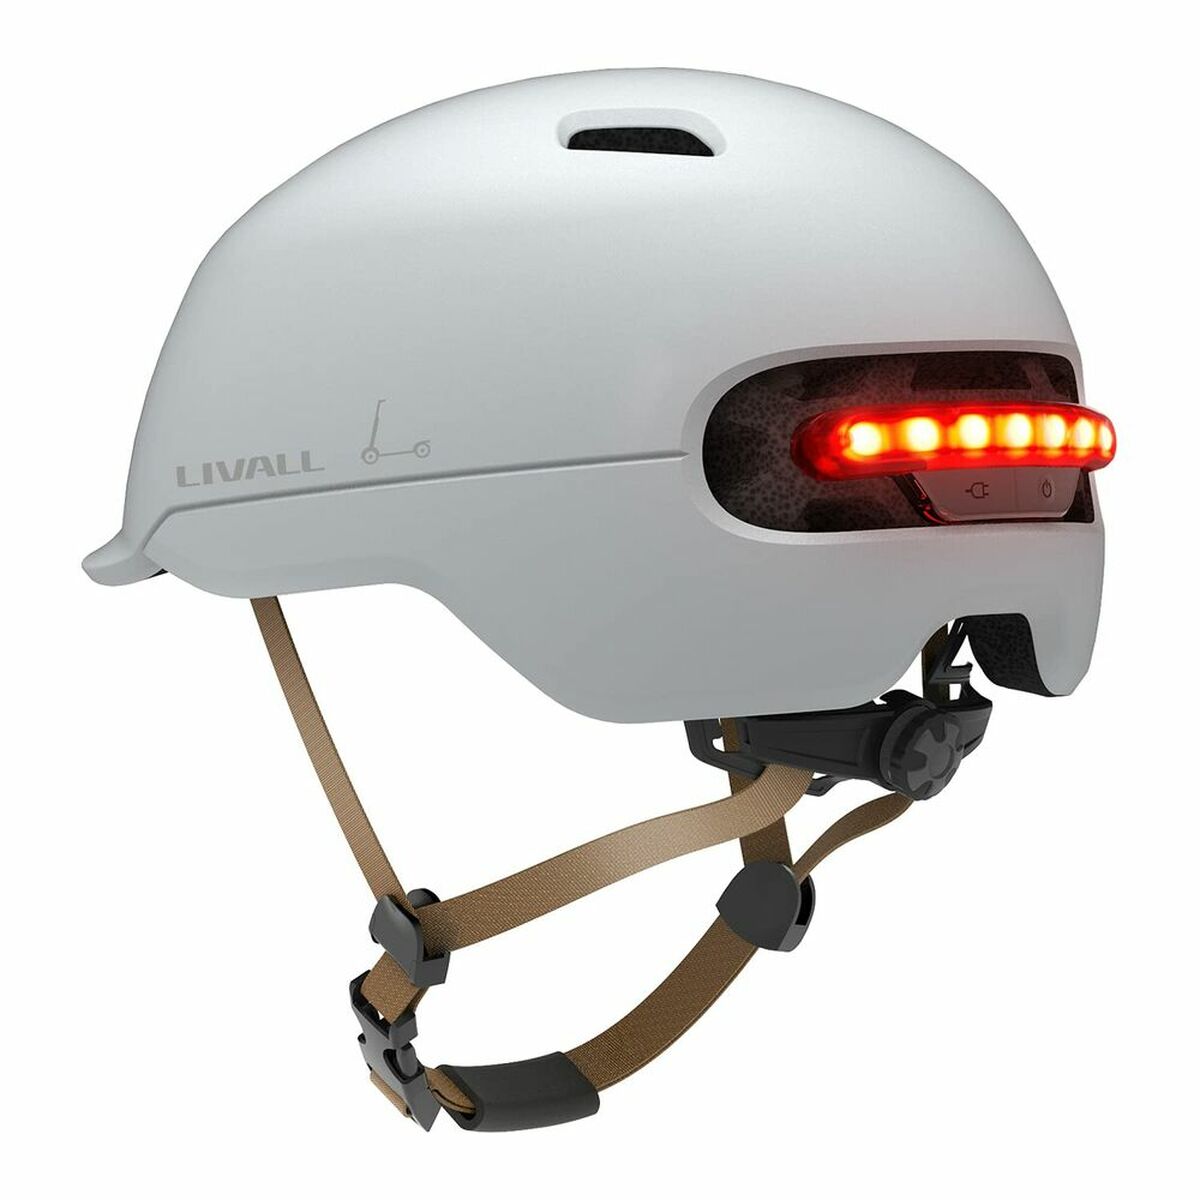 Helm für Elektroroller Livall C20 Weiß M